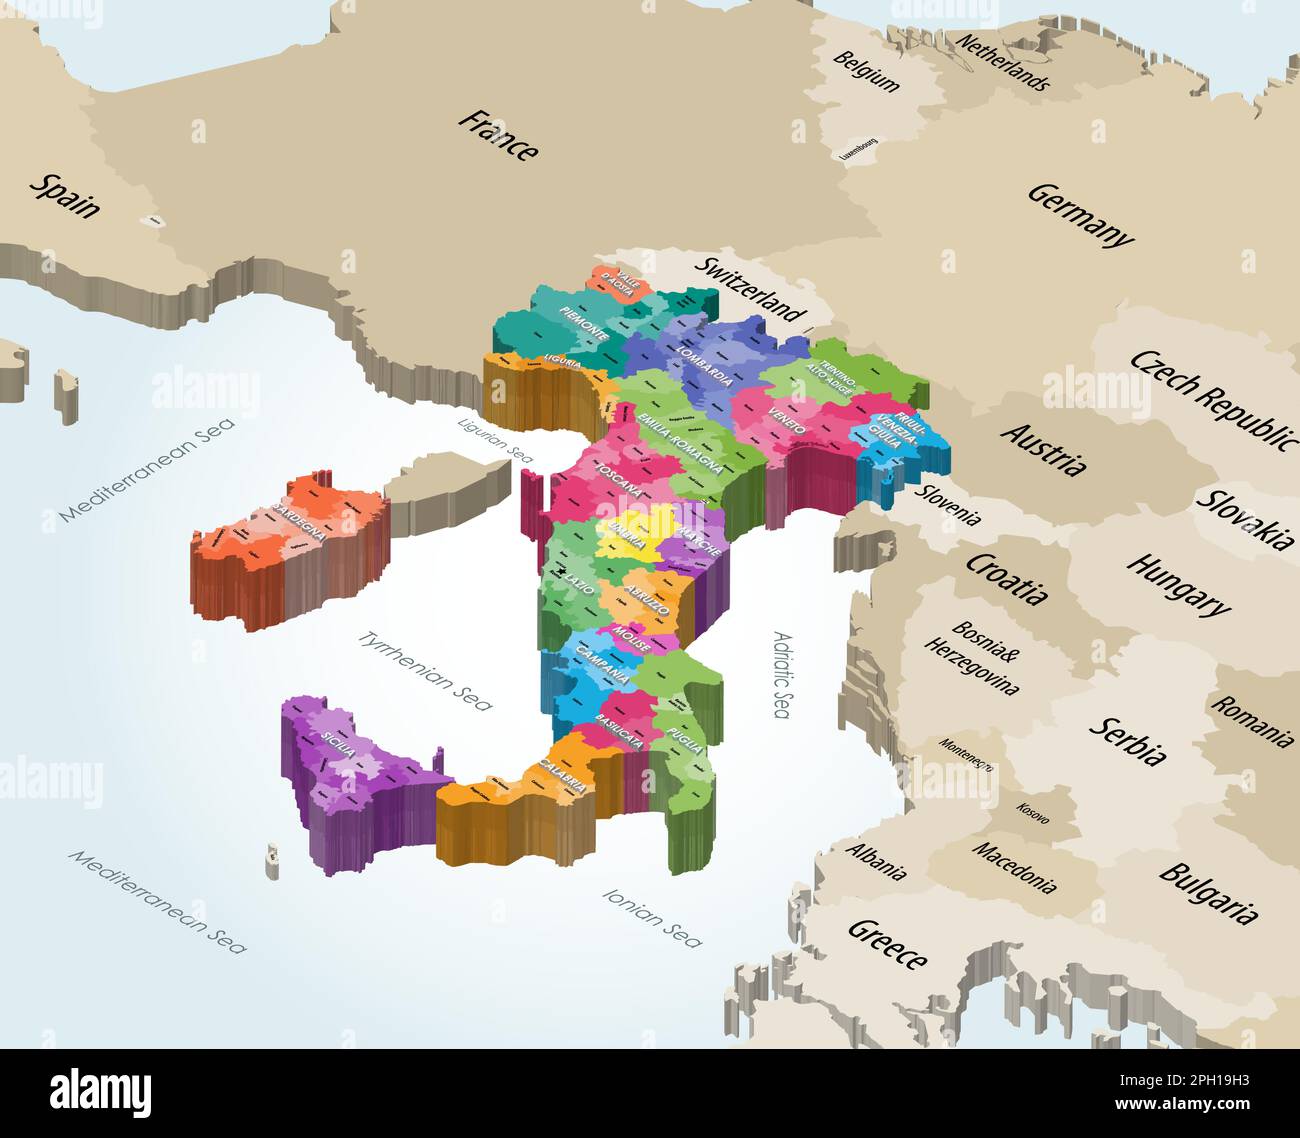 Italie municipalités carte isométrique colorée par régions administratives avec pays voisins Illustration de Vecteur